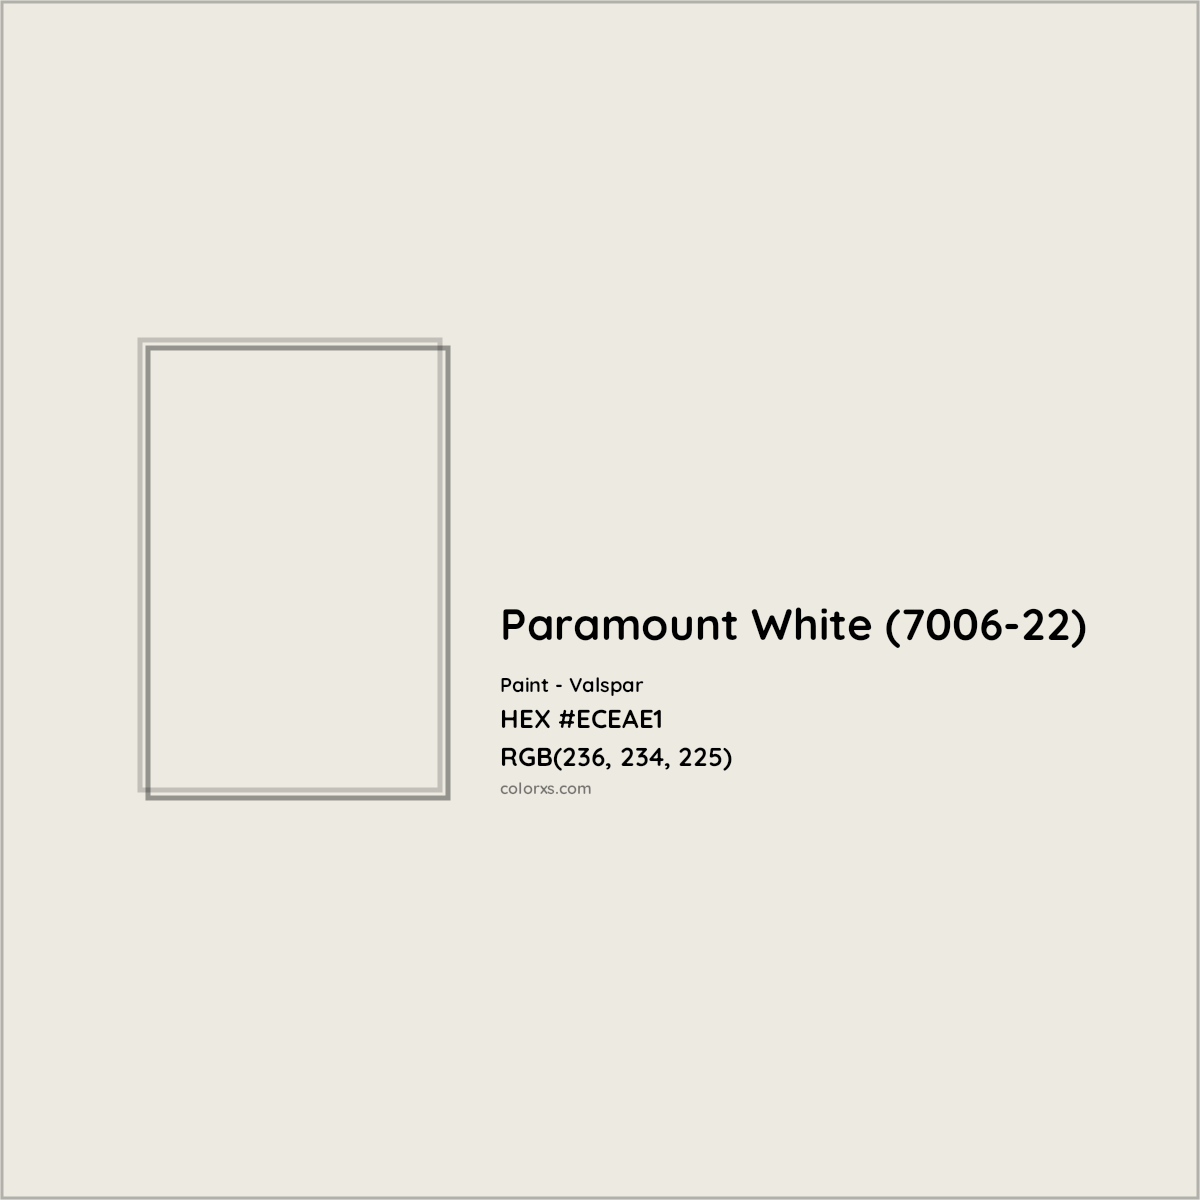 HEX #ECEAE1 Paramount White (7006-22) Paint Valspar - Color Code